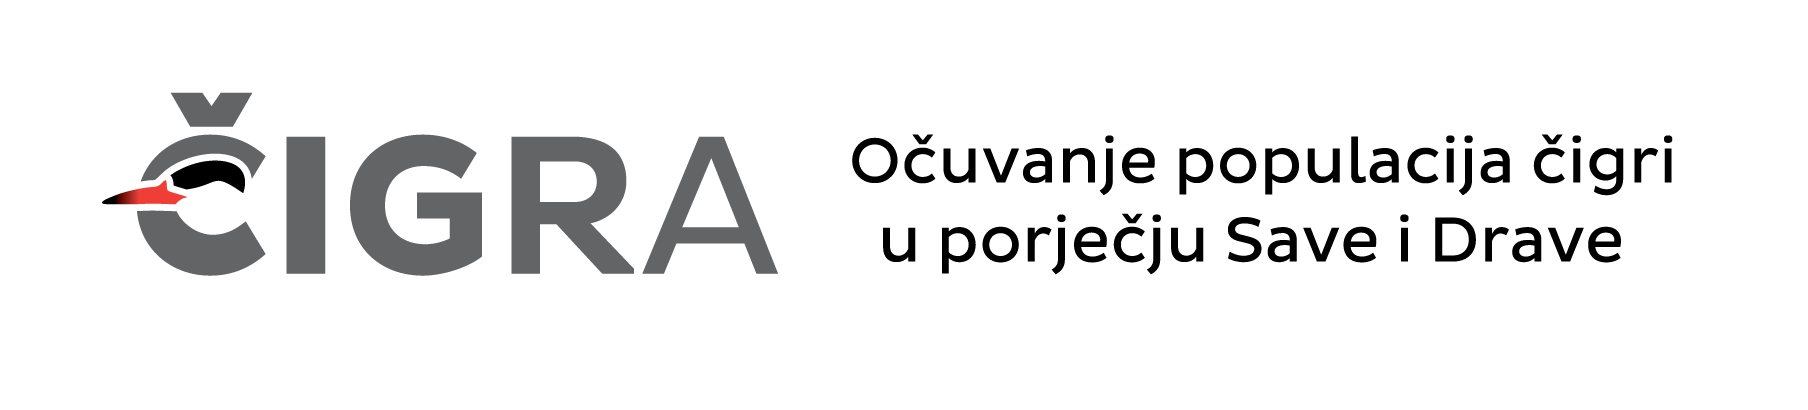 logo čigra